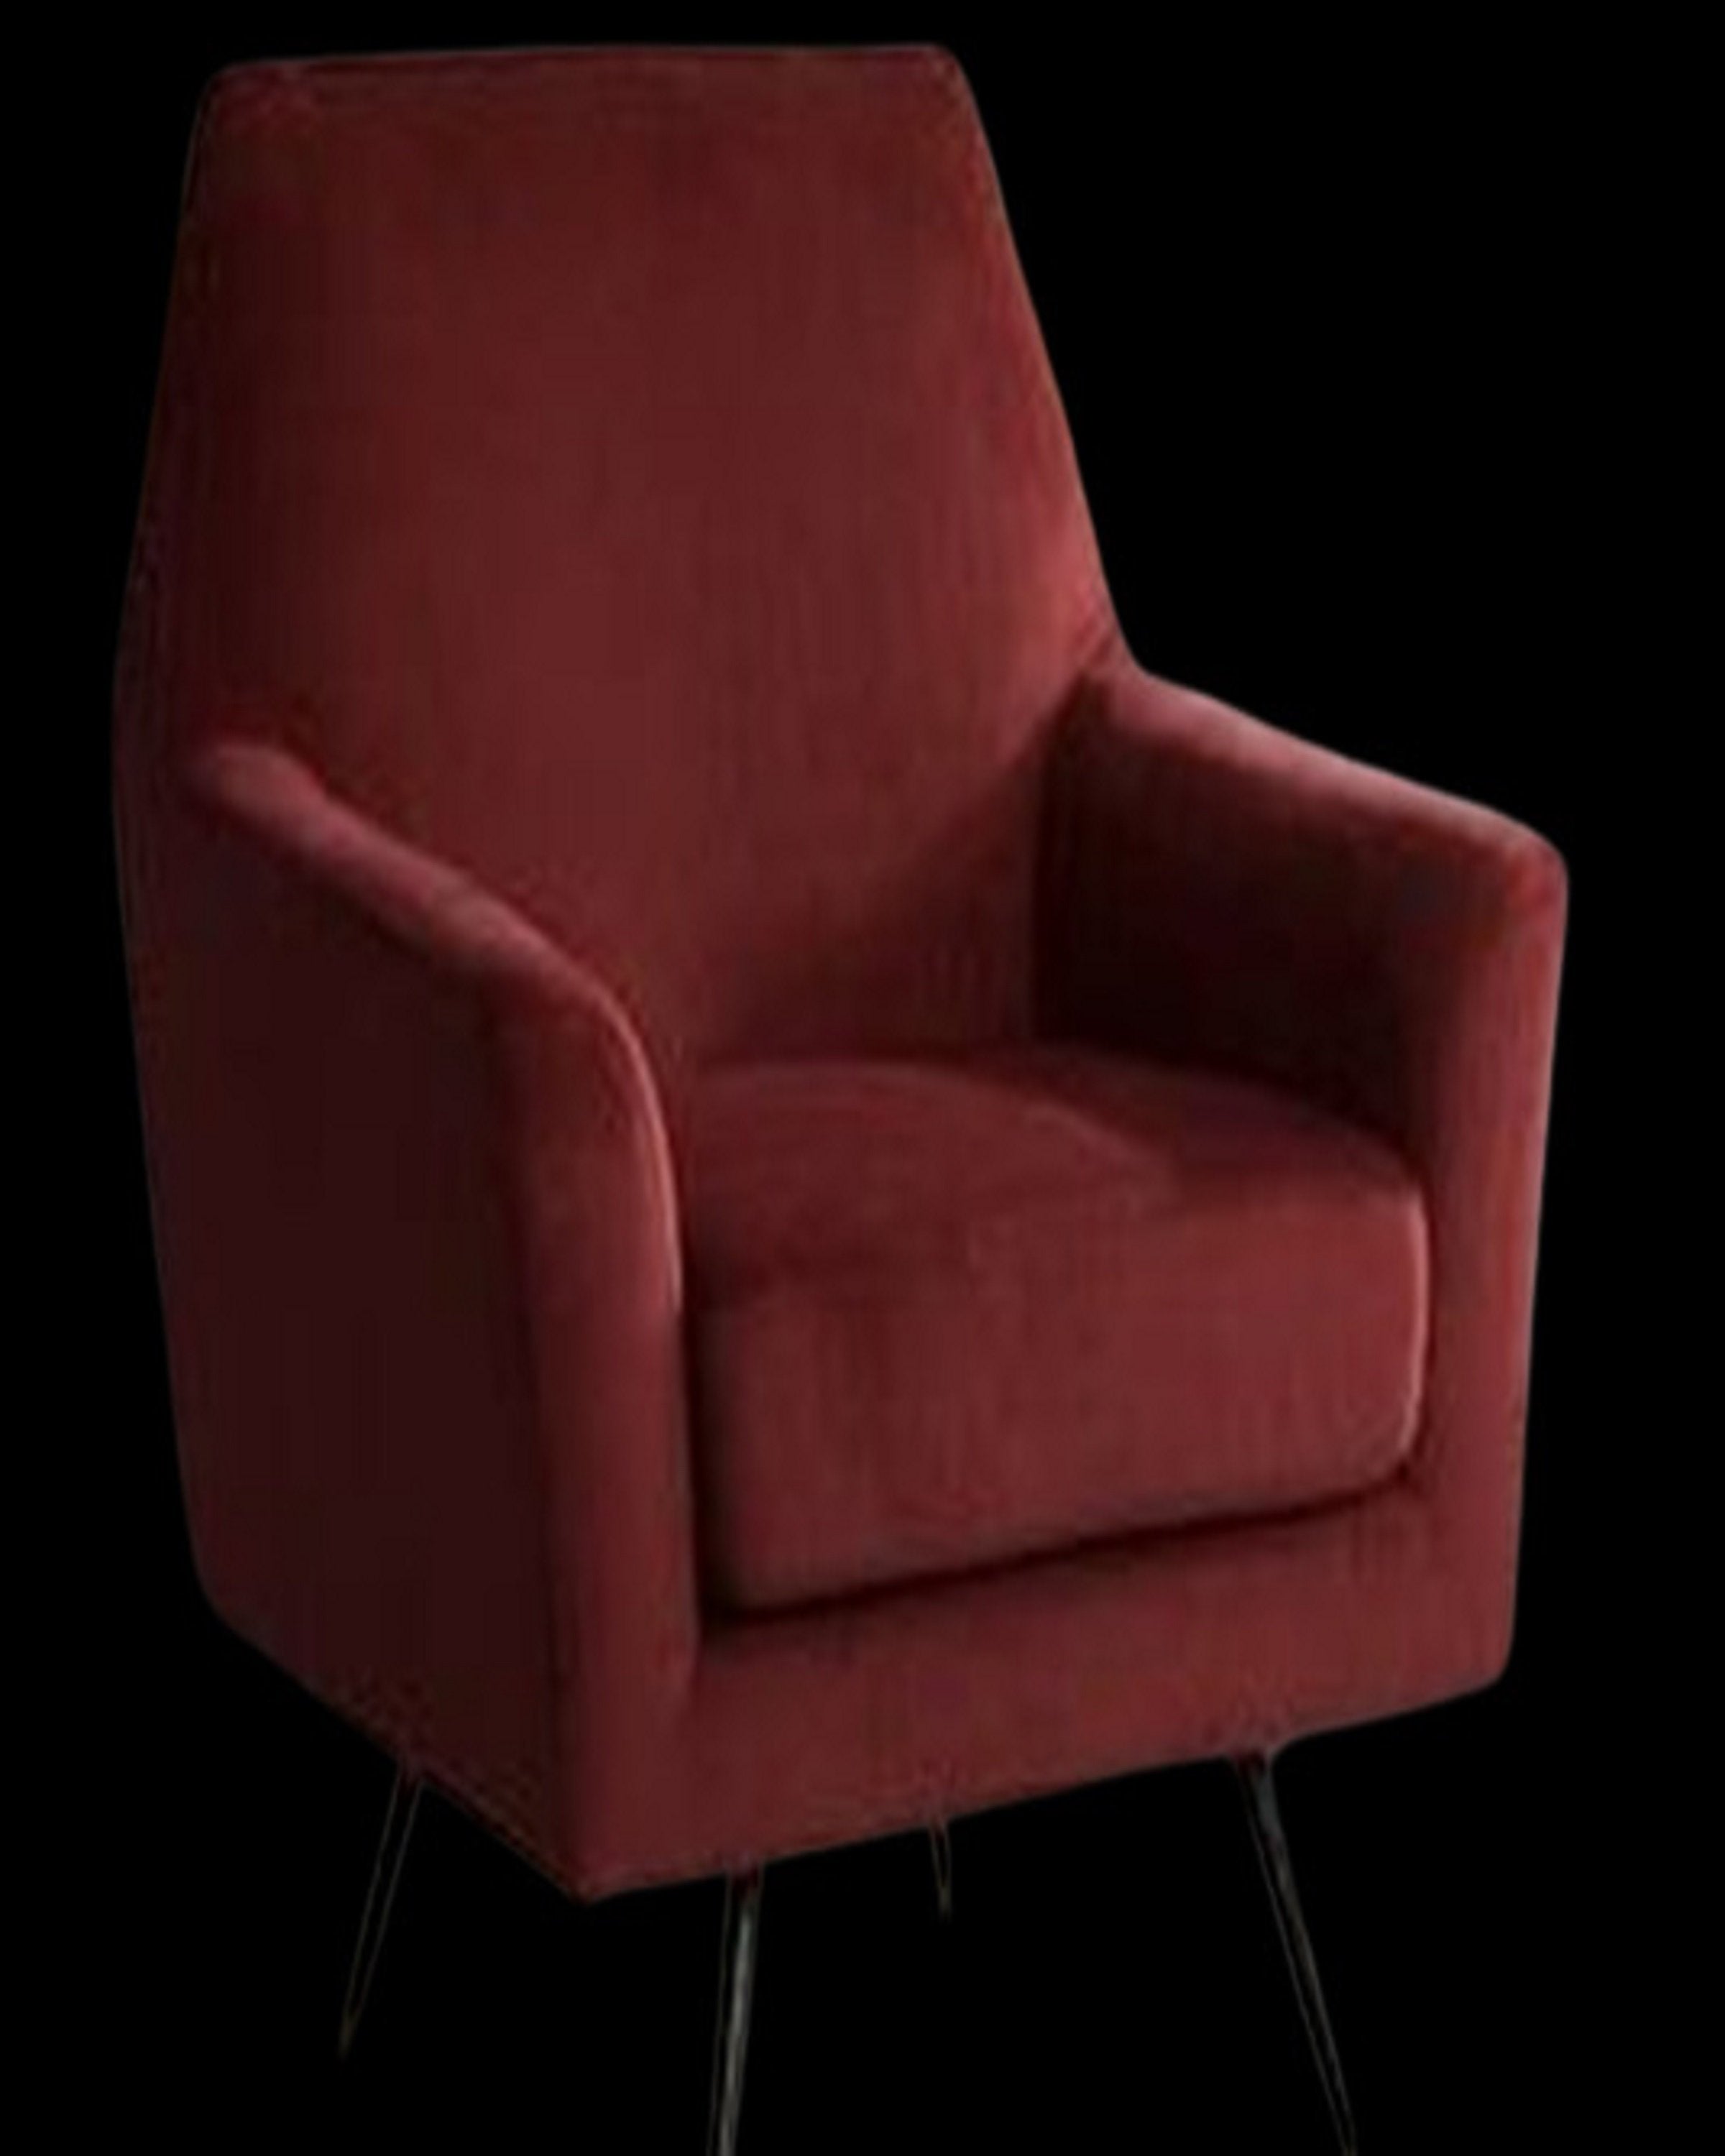 Mahin Maroon Sofa Chair